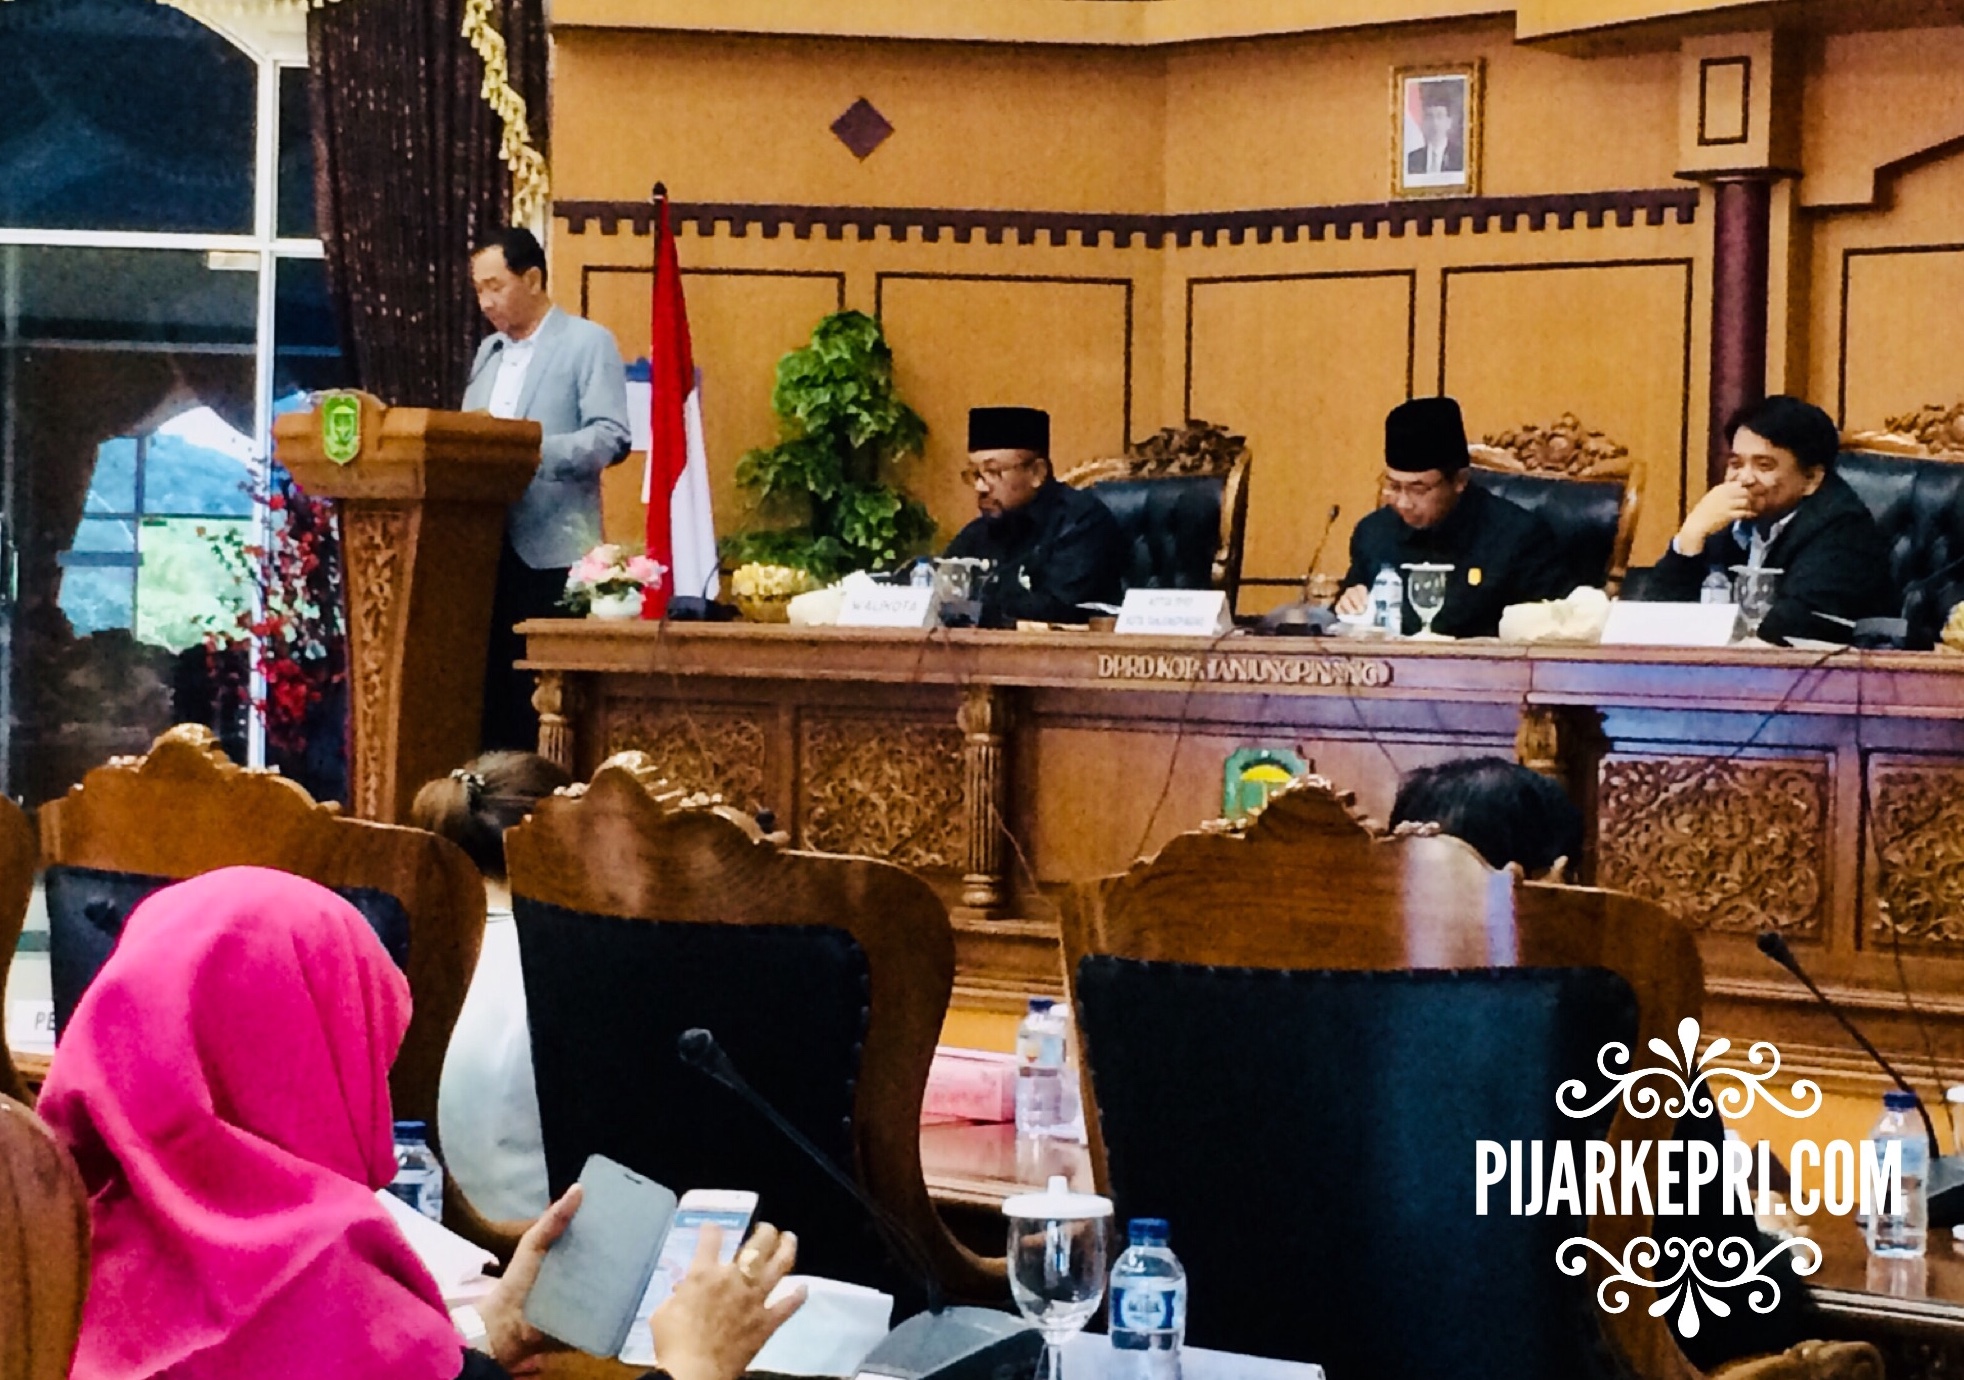 Fraksi Golkar di DPRD Tanjungpinang tengah menyampaikan pandangan fraksi tentang nota keuangan rancangan perubahan APBD Kota Tanjungpinang tahun anggaran 2017, di Senggarang, Tanjungpinang Kepri. (Foto: pijarkepri.com)